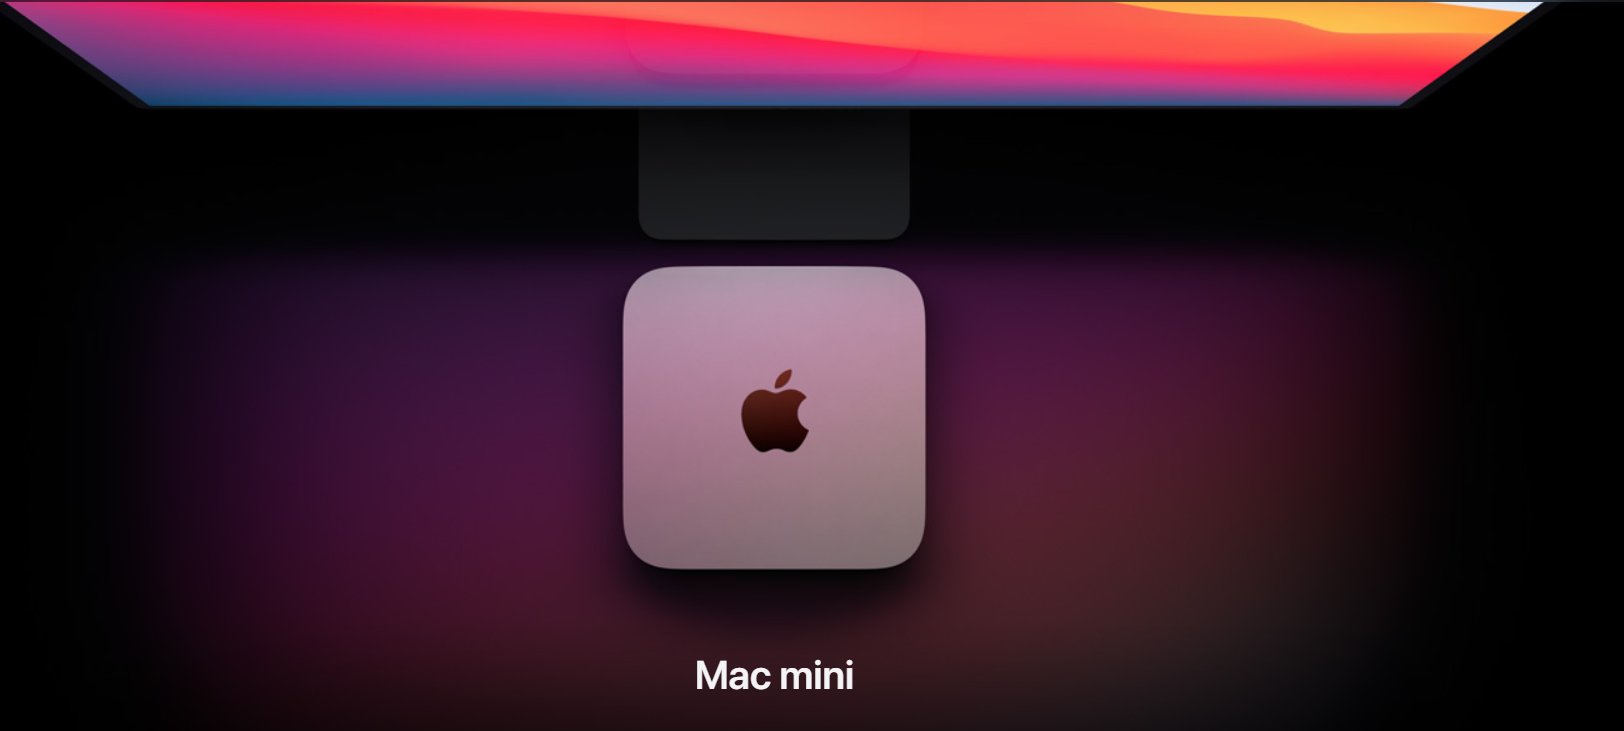 Με M1 το νέο Mac Mini, έως τρεις φορές γρηγορότερο από το προηγούμενο μοντέλο